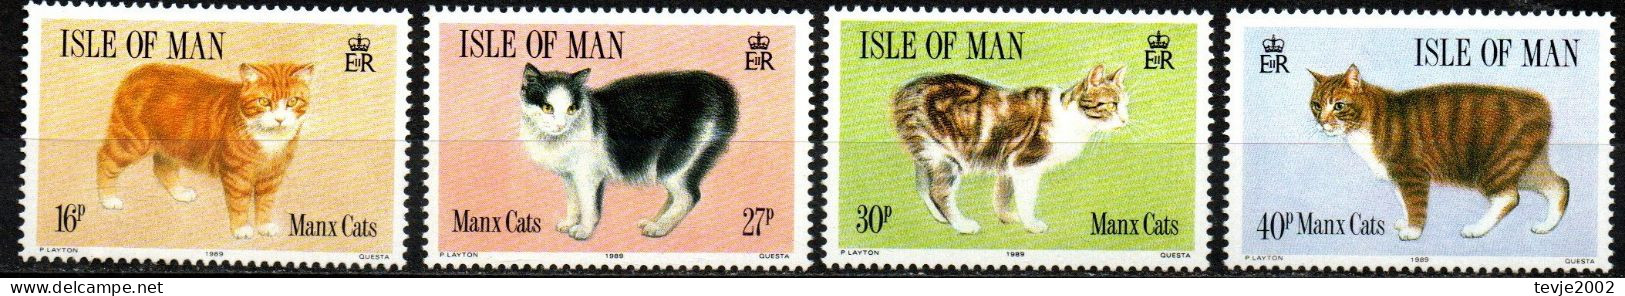 Isle Of Man 1989 - Mi.Nr. 383 - 389 - Postfrisch MNH - Tiere Animals Katzen Cats - Hauskatzen